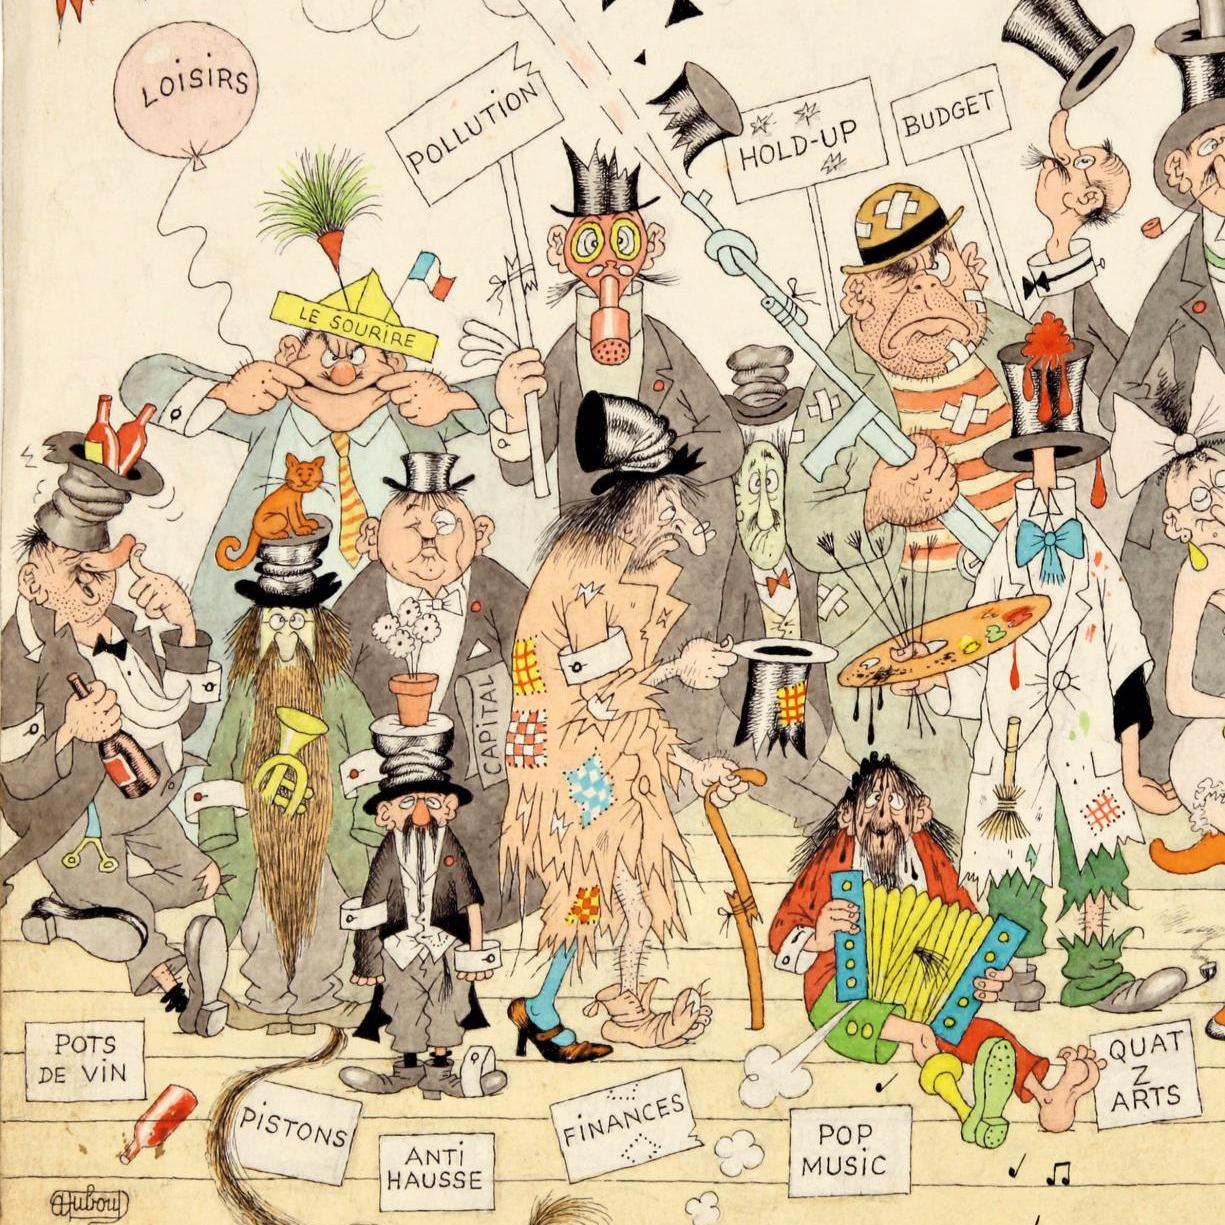 Avant Vente - Albert Dubout, illustrateur satirique